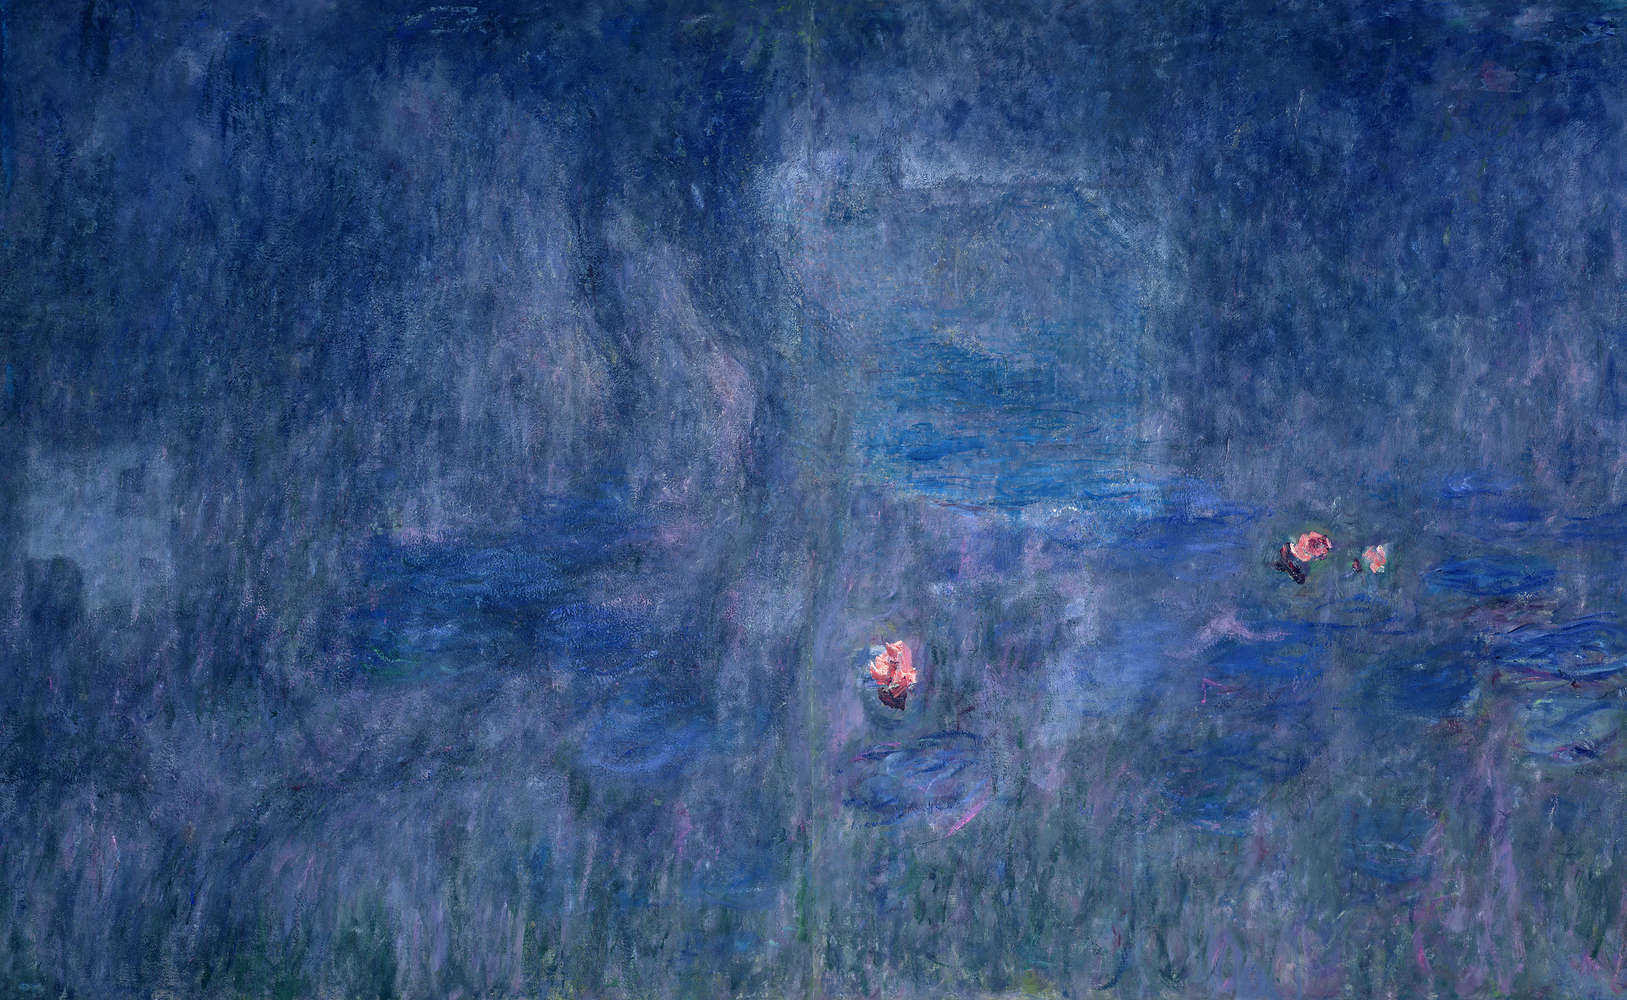             Ninfee: riflesso degli alberi" murale di Claude Monet
        